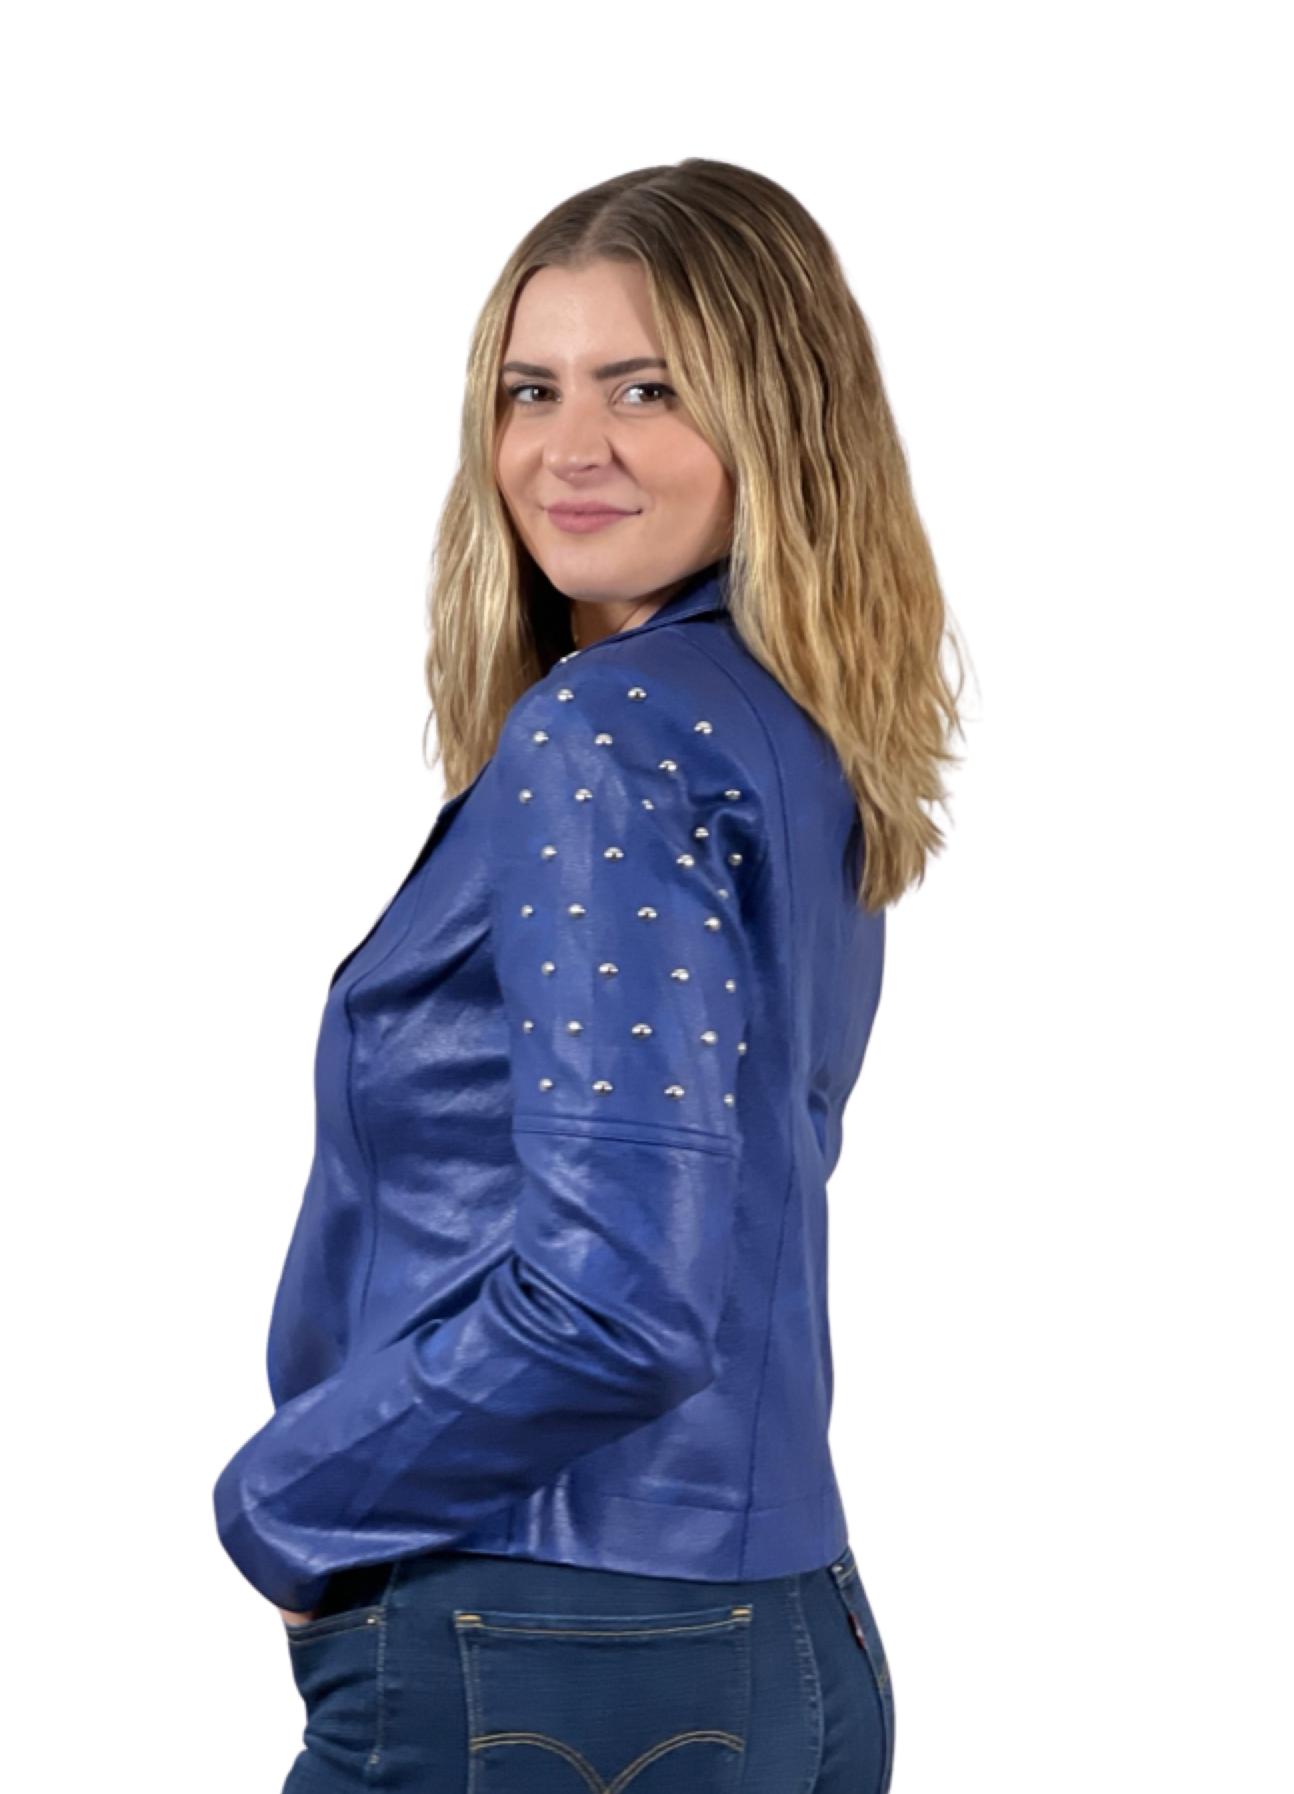 Foil Faux Leather jacket with rivets trim (Royal blue)